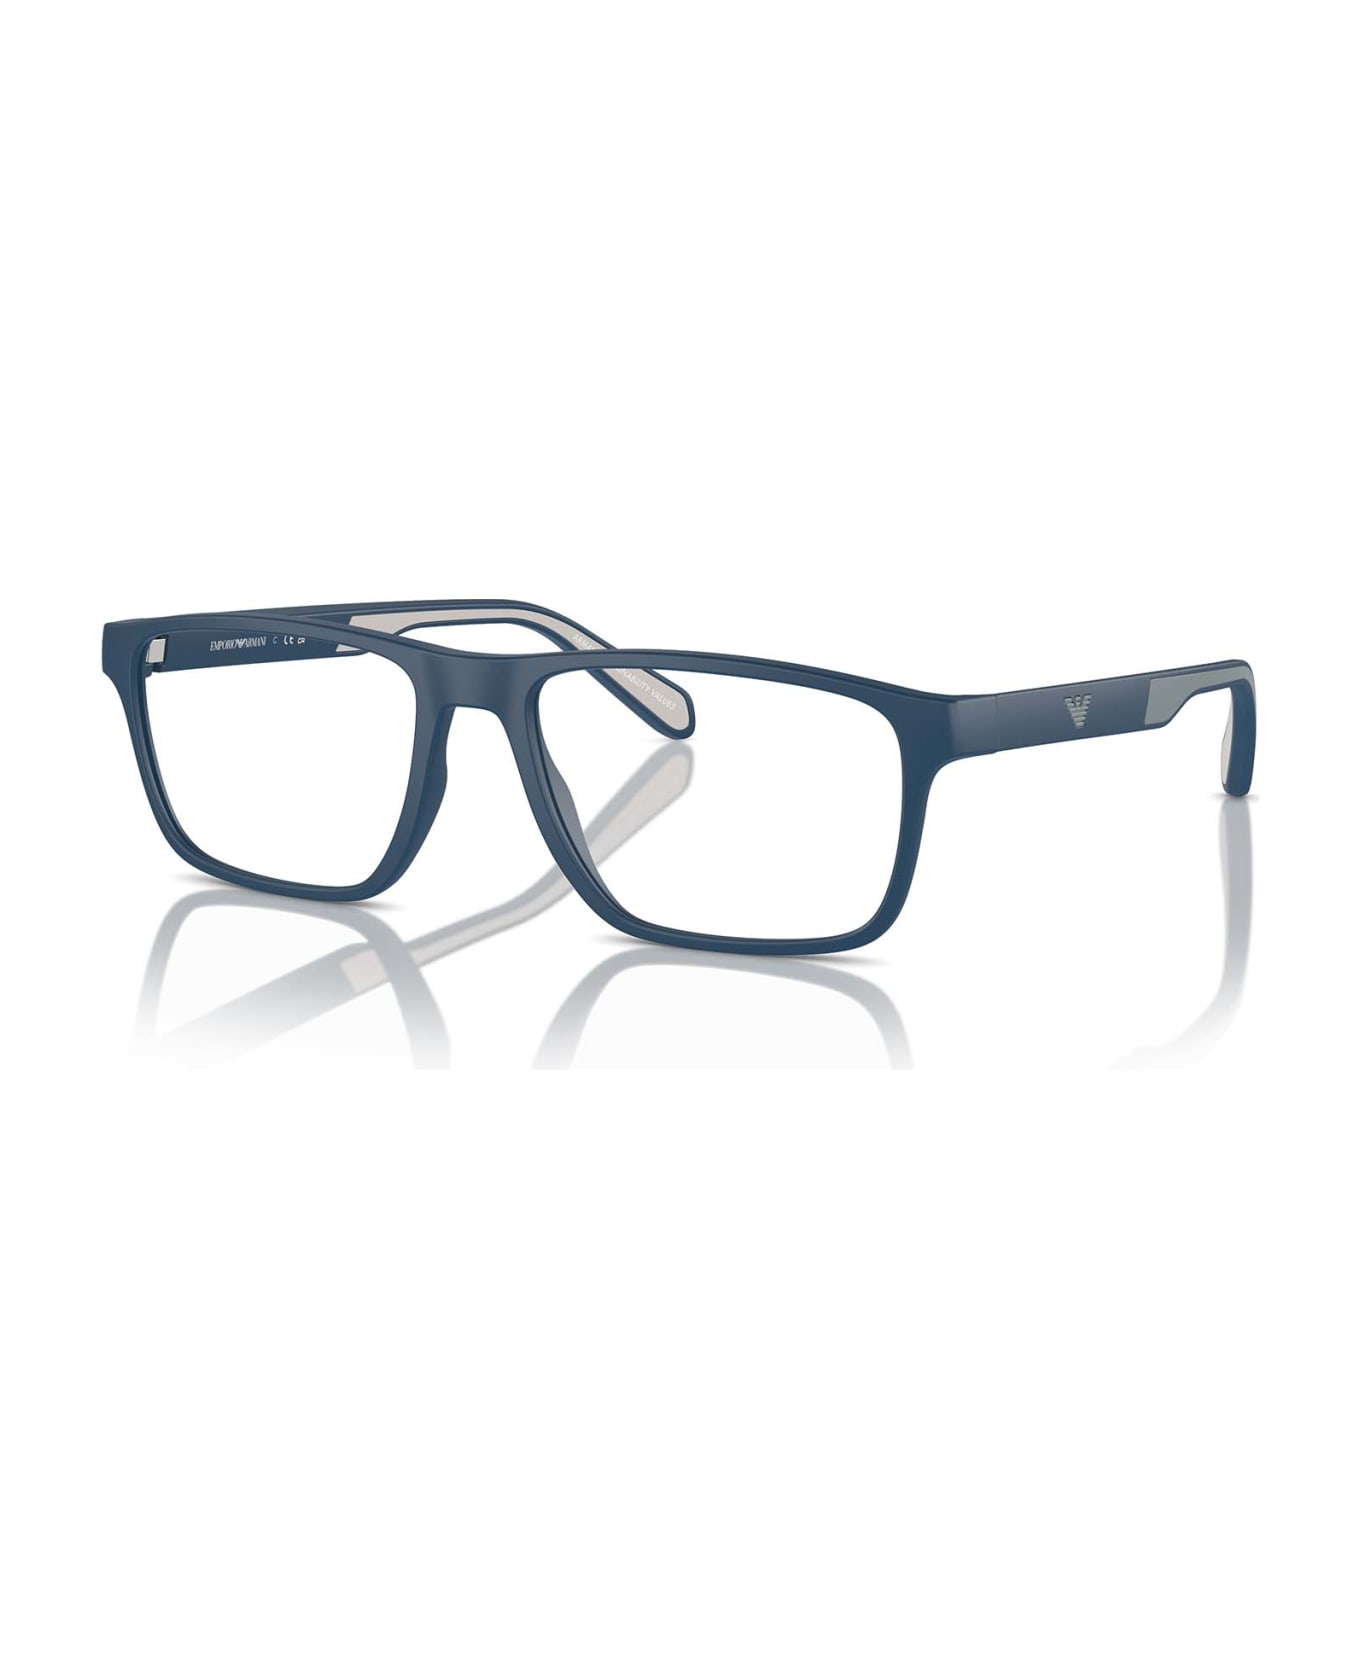 Emporio Armani Ea3233 Matte Blue Glasses - Matte Blue